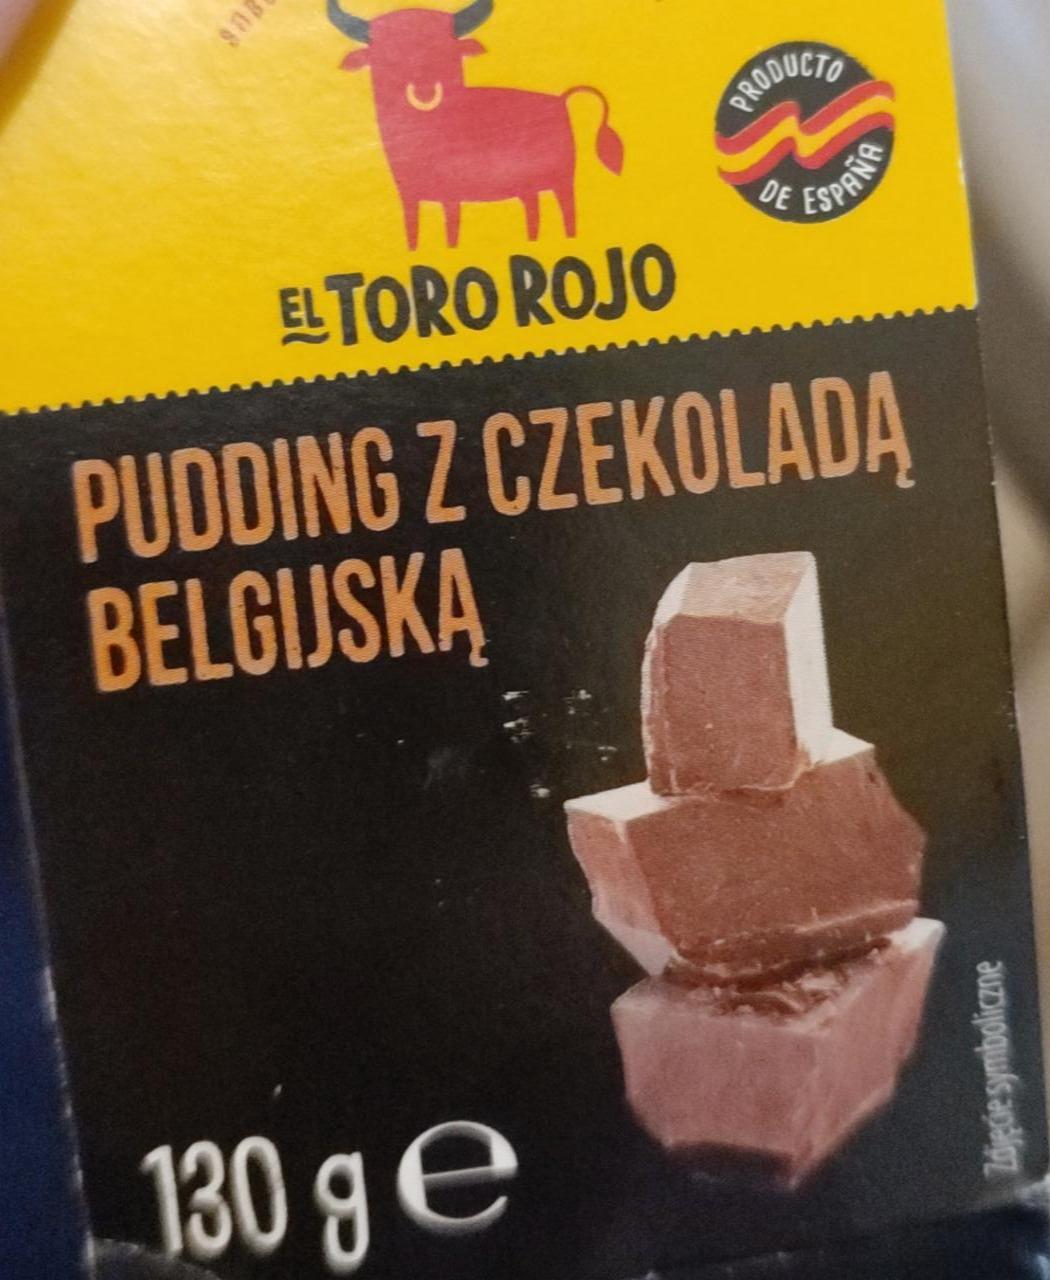 Fotografie - Pudding z czekolada belgijska El Toro Rojo